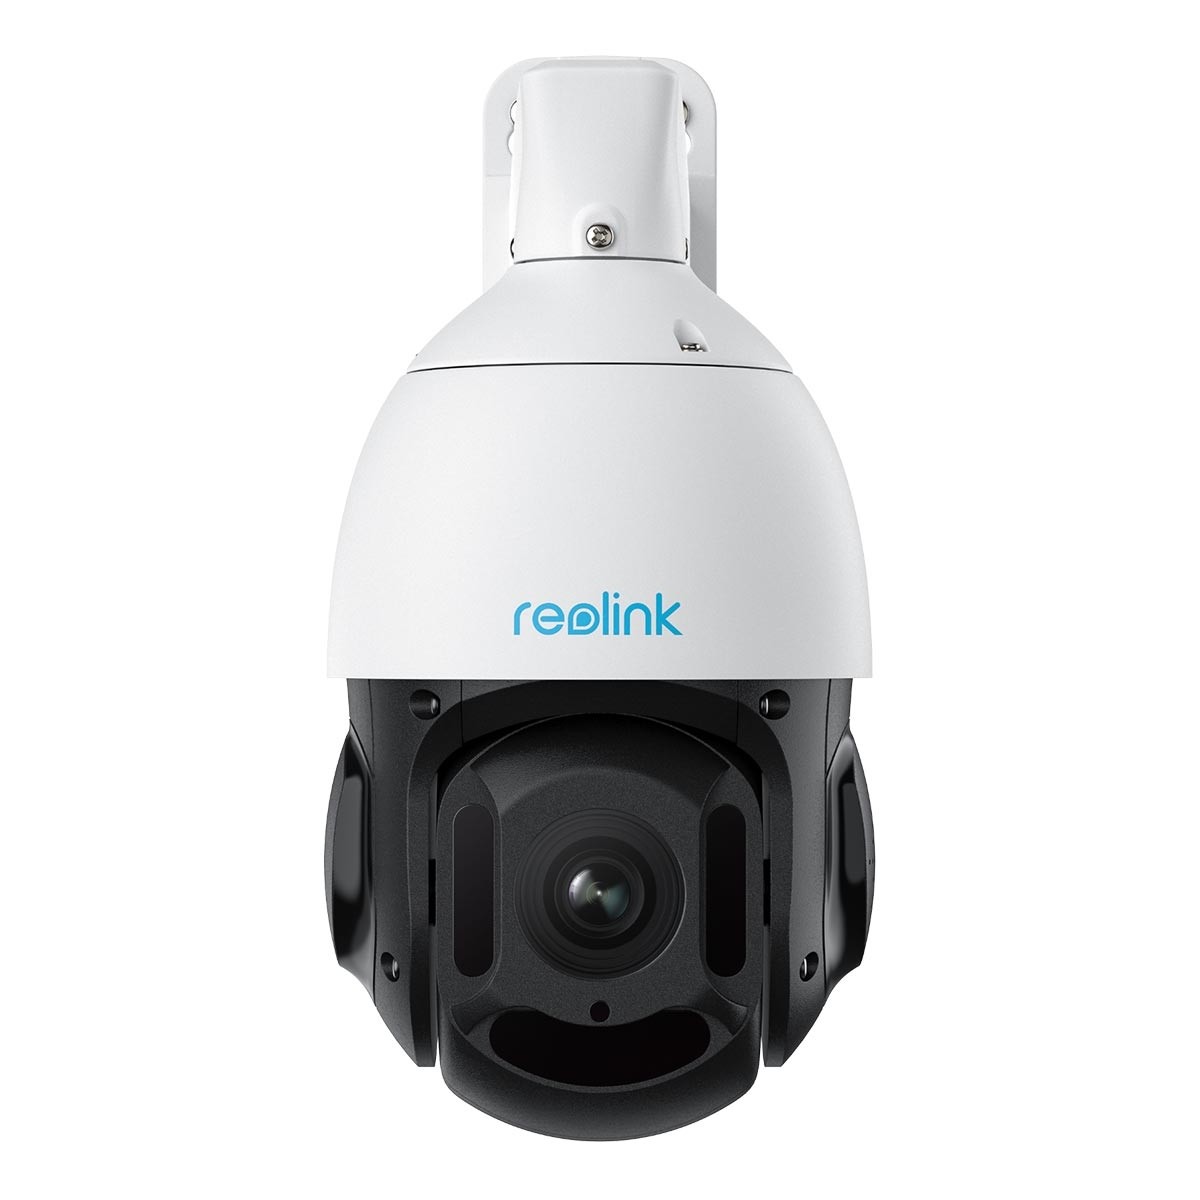 Reolink D4K23 16X intelligente 4K UHD PoE IP PTZ Überwachungskameramit 16X  optischem Zoom und automatischer Verfolgung, Nachtsicht bis zu 80 Meter  6975253986538